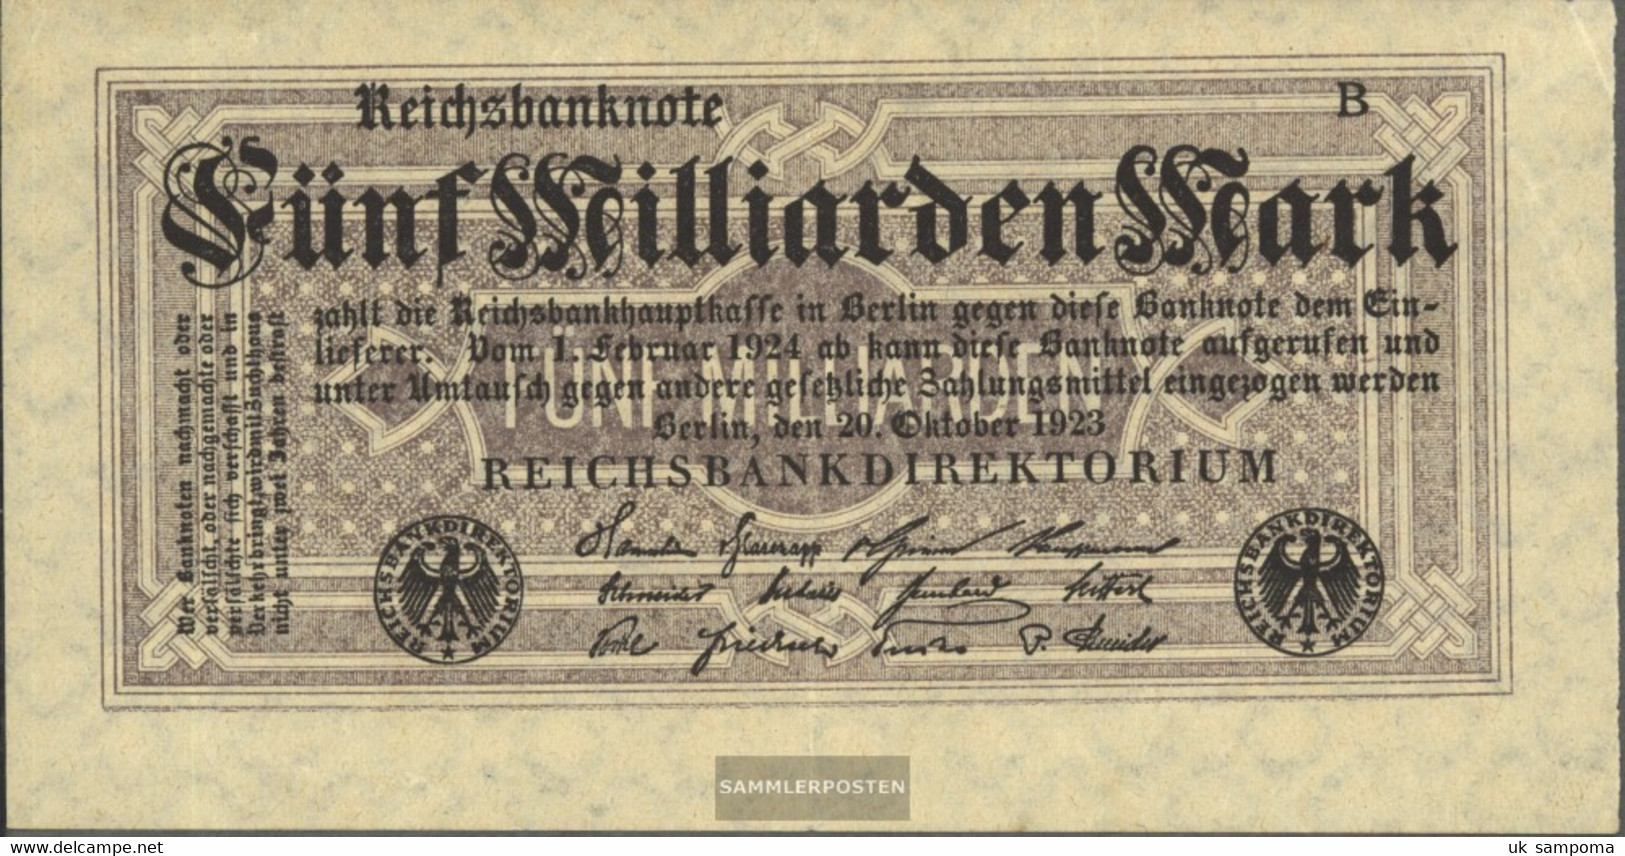 German Empire Rosenbg: 120d, Without Kontrollnummer With Firmenzeichen Used (III) 1923 5 Billion Mark - 5 Milliarden Mark